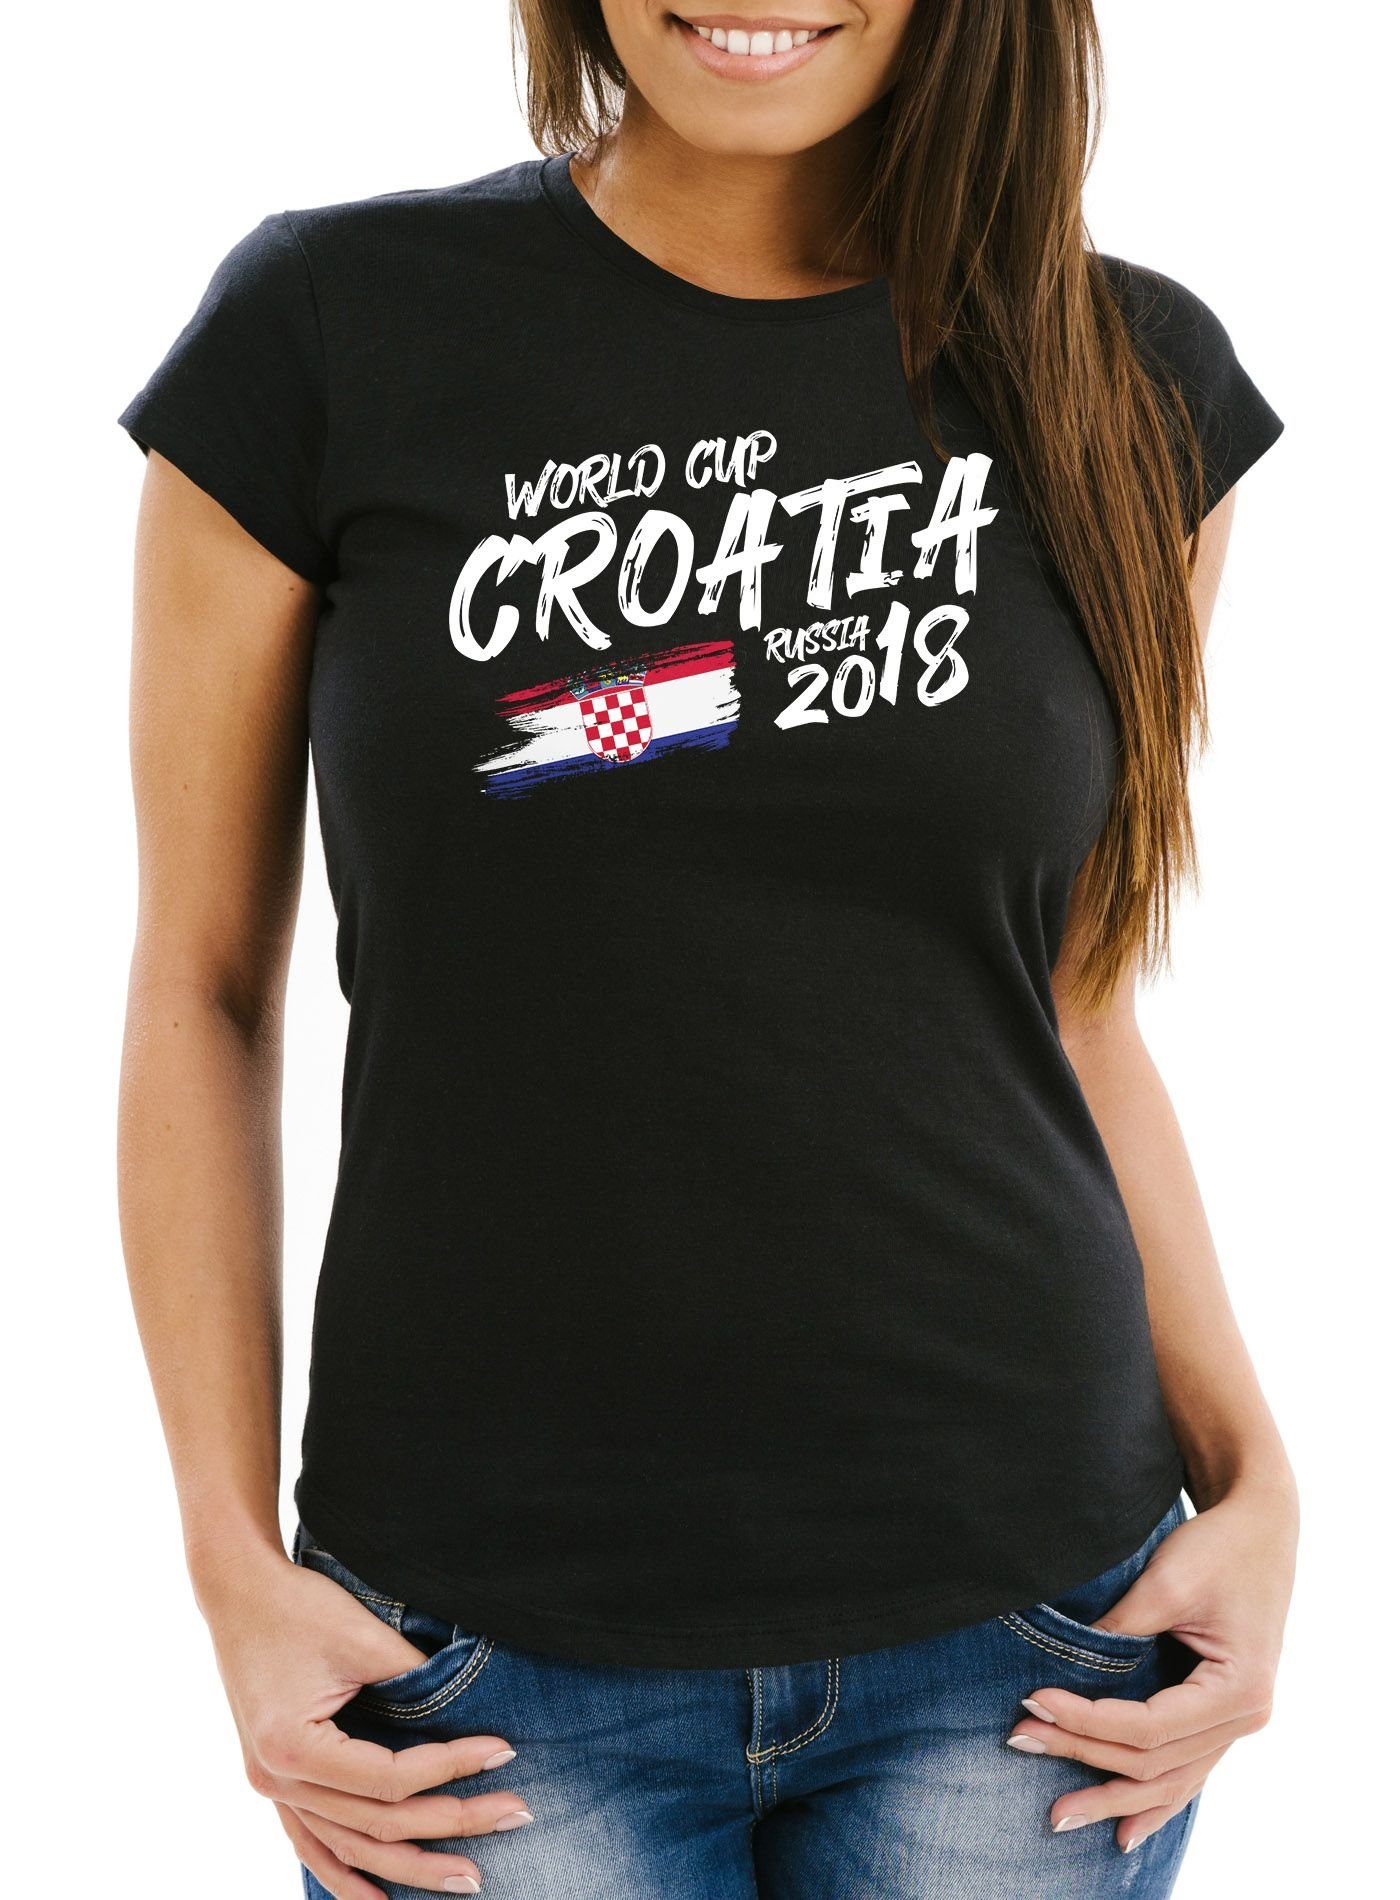 MoonWorks Print-Shirt Damen Fan-Shirt Kroatien Croatia Hrvatska WM 2018  Fußball Weltmeisterschaft Moonworks® mit Print, cooles Damen T-Shirt zur  Weltmeisterschaft 2018 der Marke Moonworks®